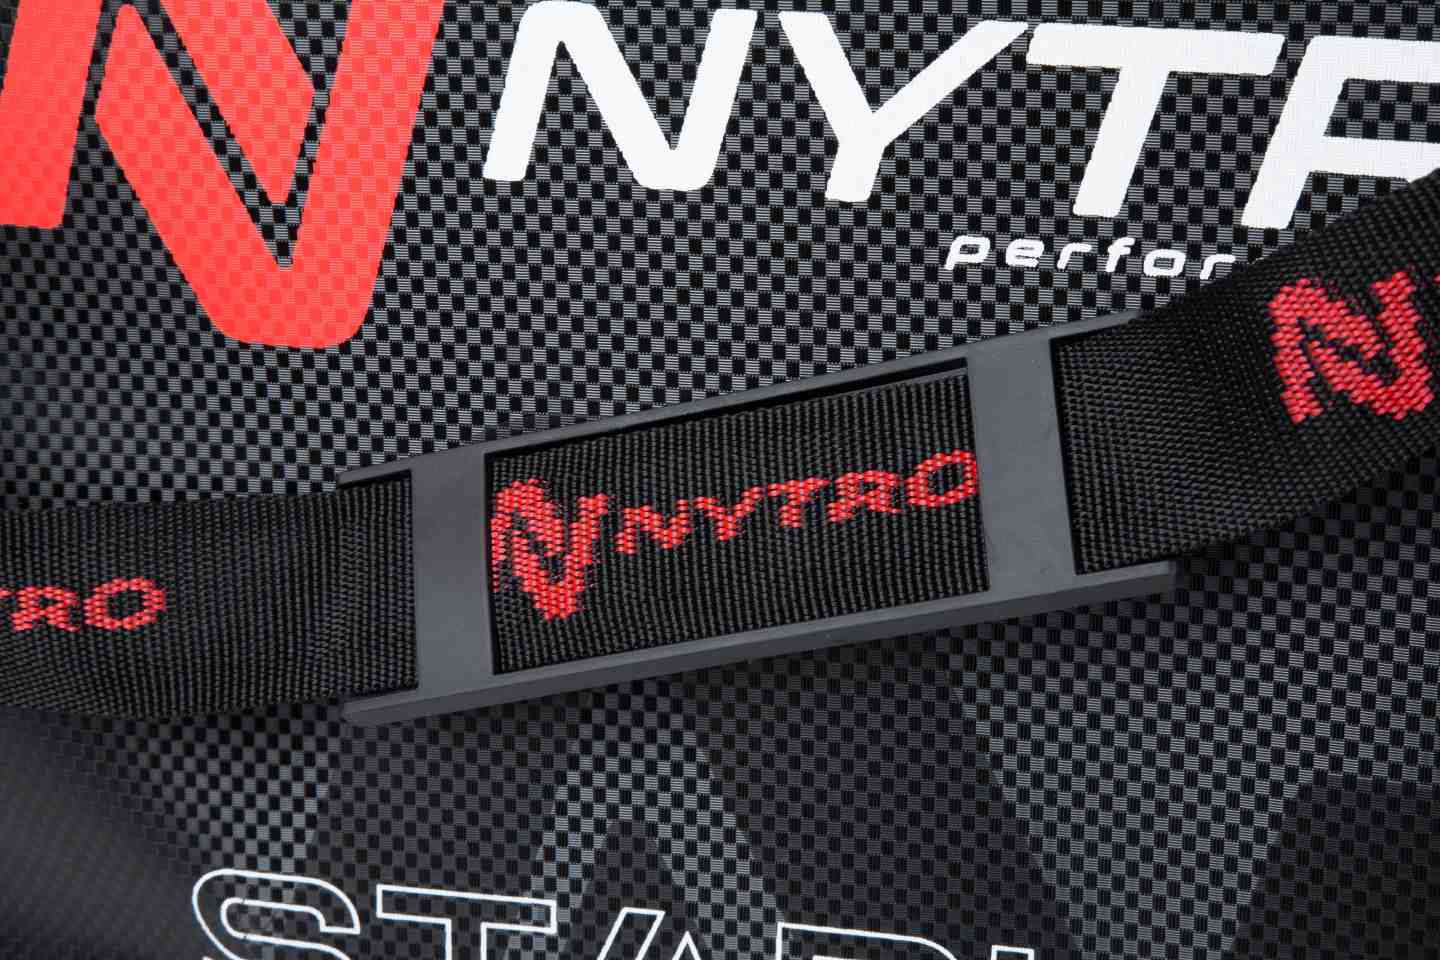 Nytro StarkX EVA Wasserdichte Setzkeschertasche XL